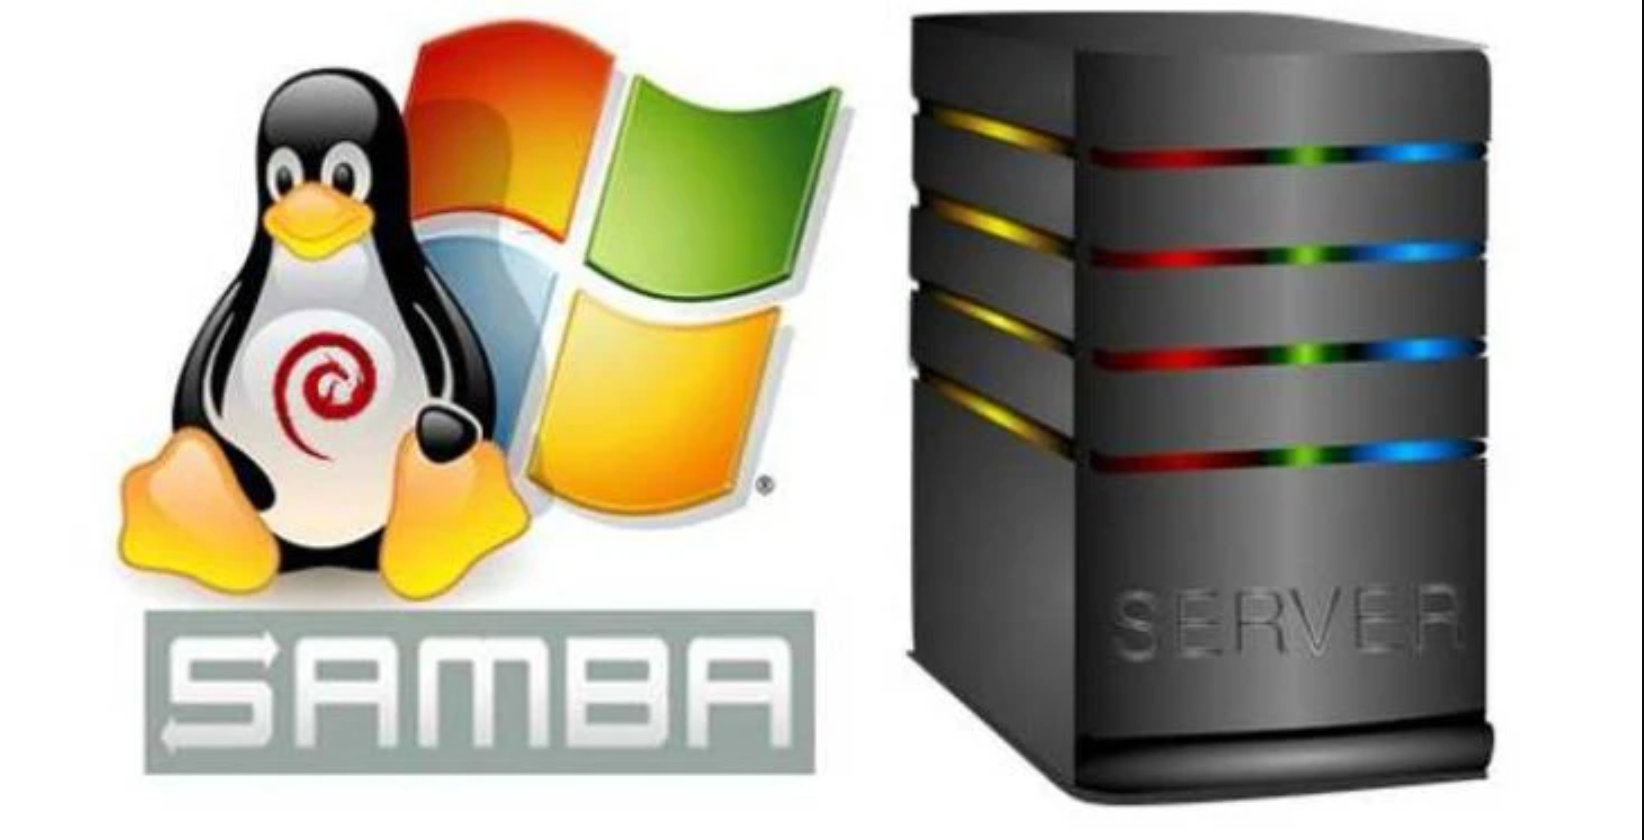 Samba 4.16 deve melhorar interoperabilidade entre arquivos e servidores de impressão do Windows